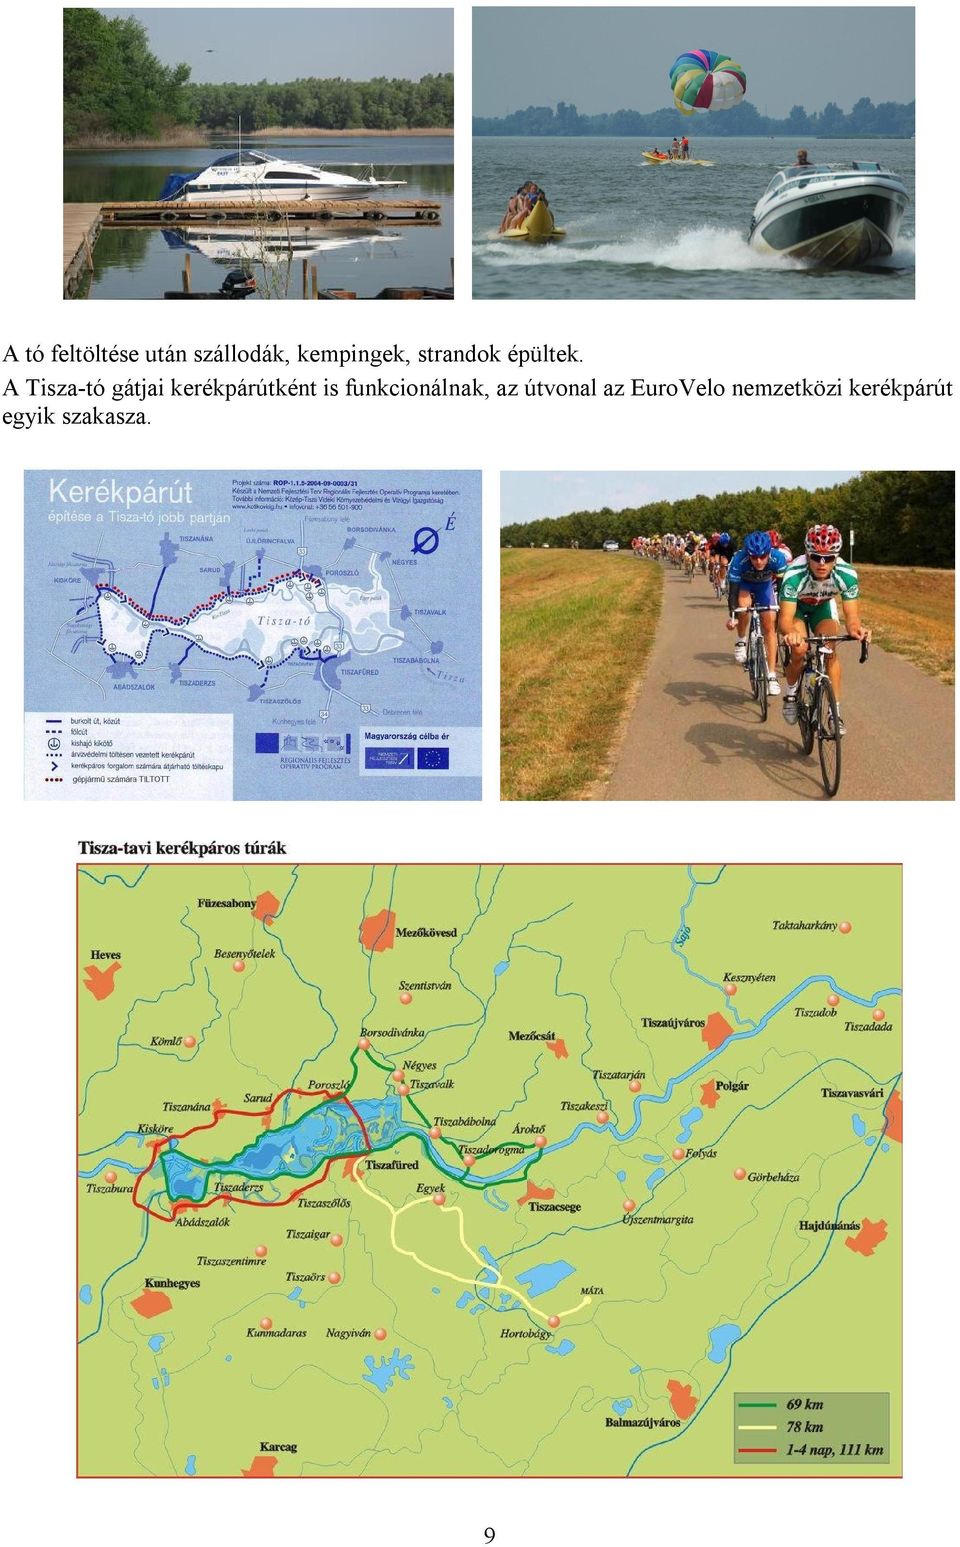 A Tisza-tó gátjai kerékpárútként is